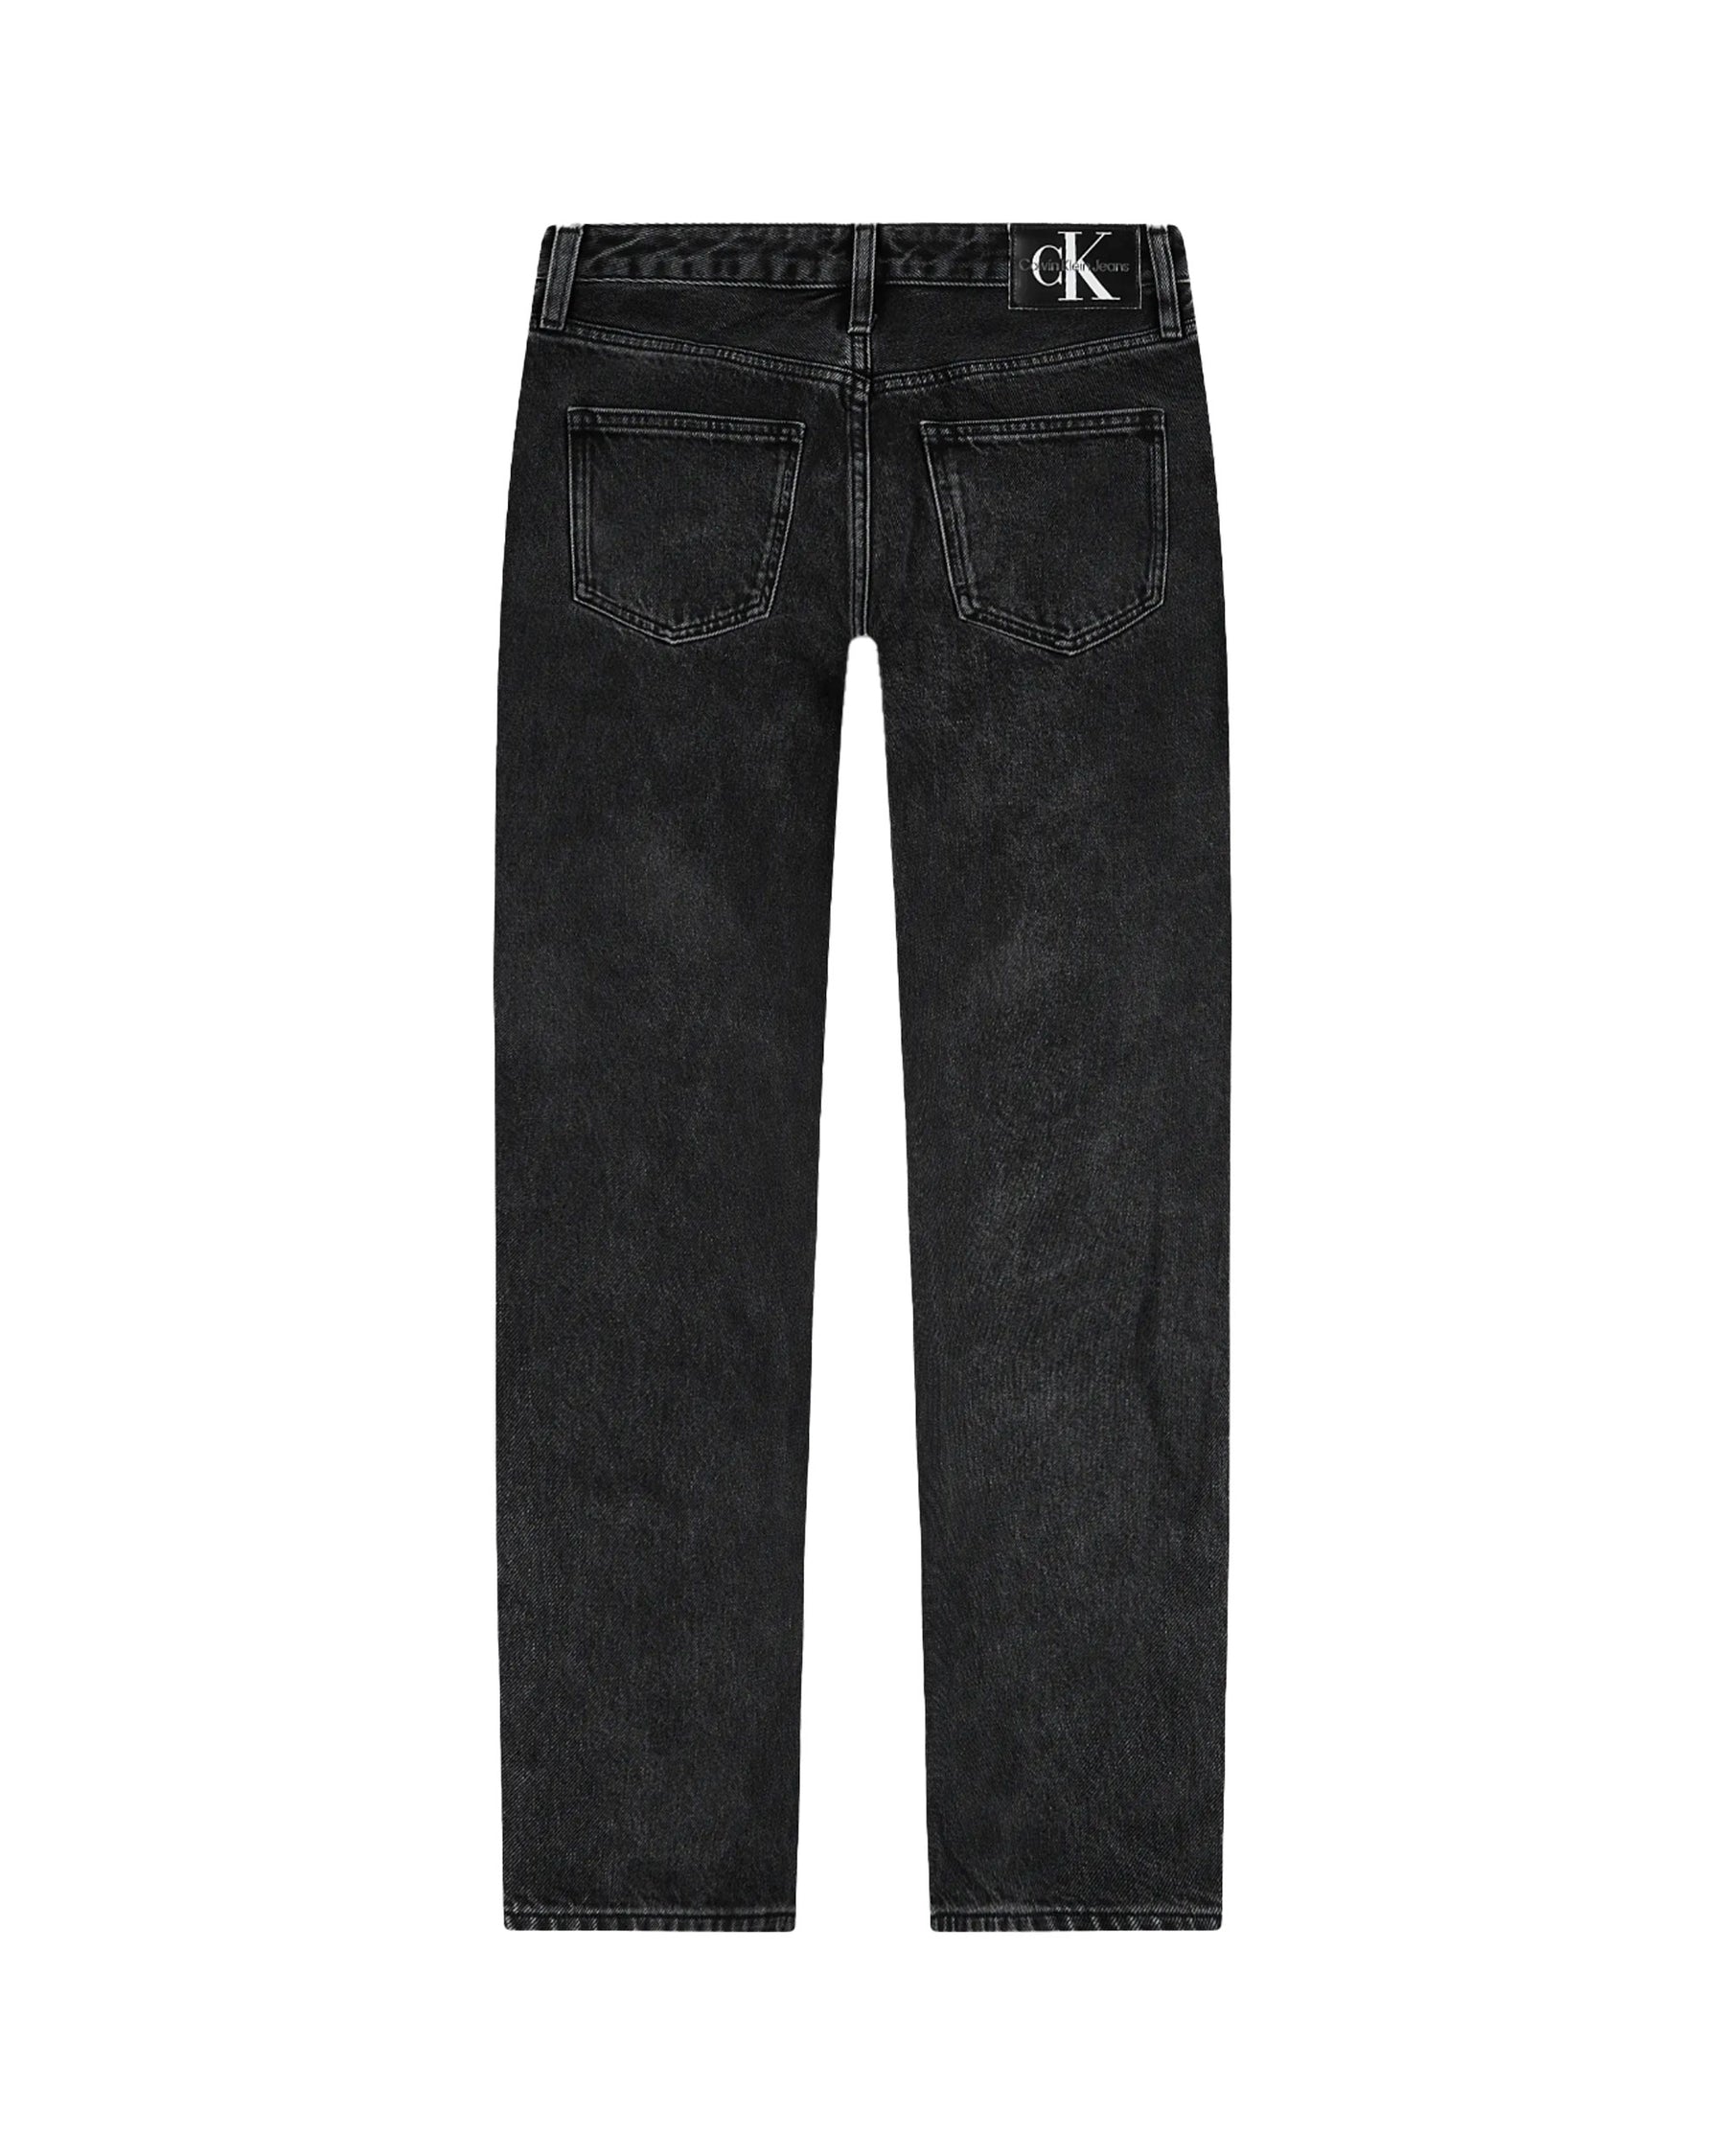 Man Jeans Calvin Klein 90s Straight Denim Black